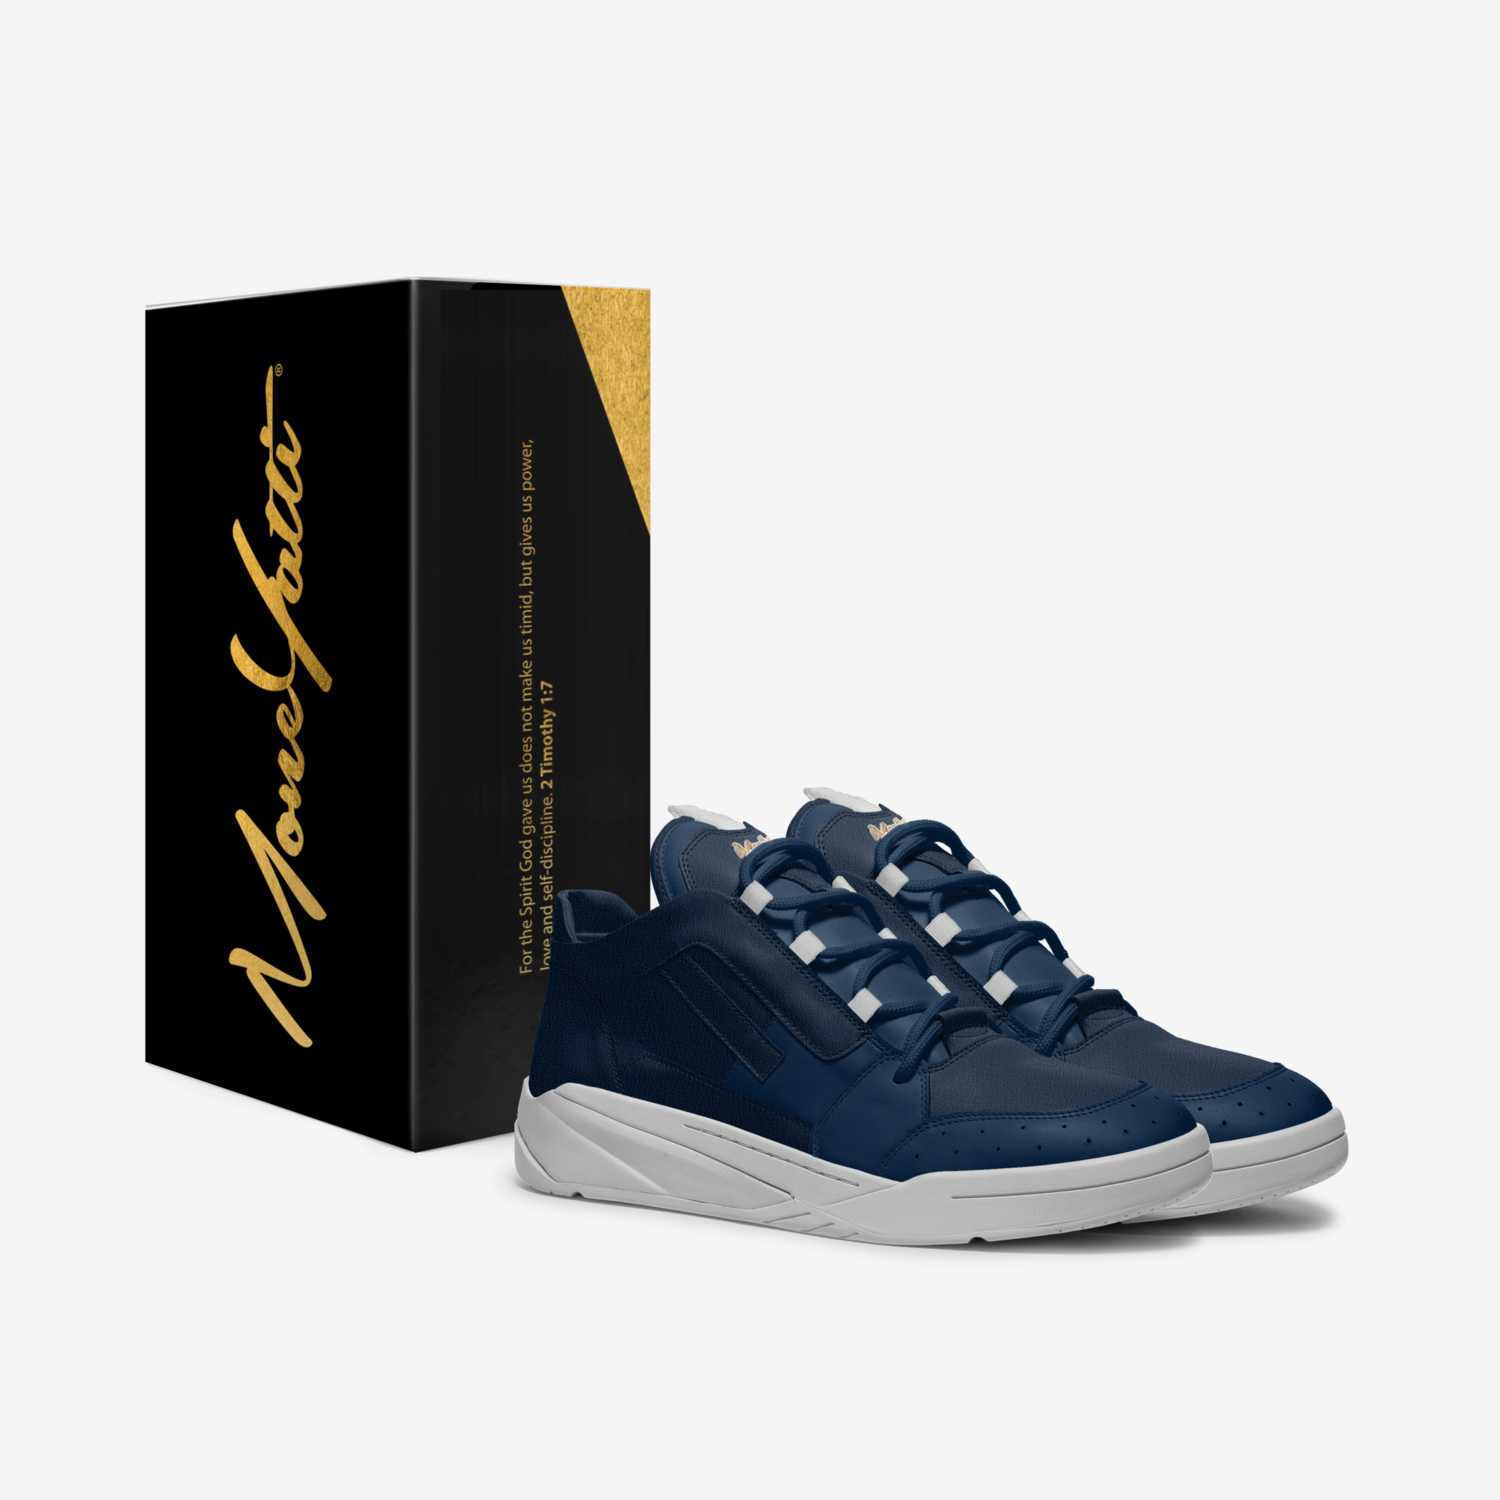 MONEYATTI TURBO 020 custom made in Italy shoes by Moneyatti Brand | Box view